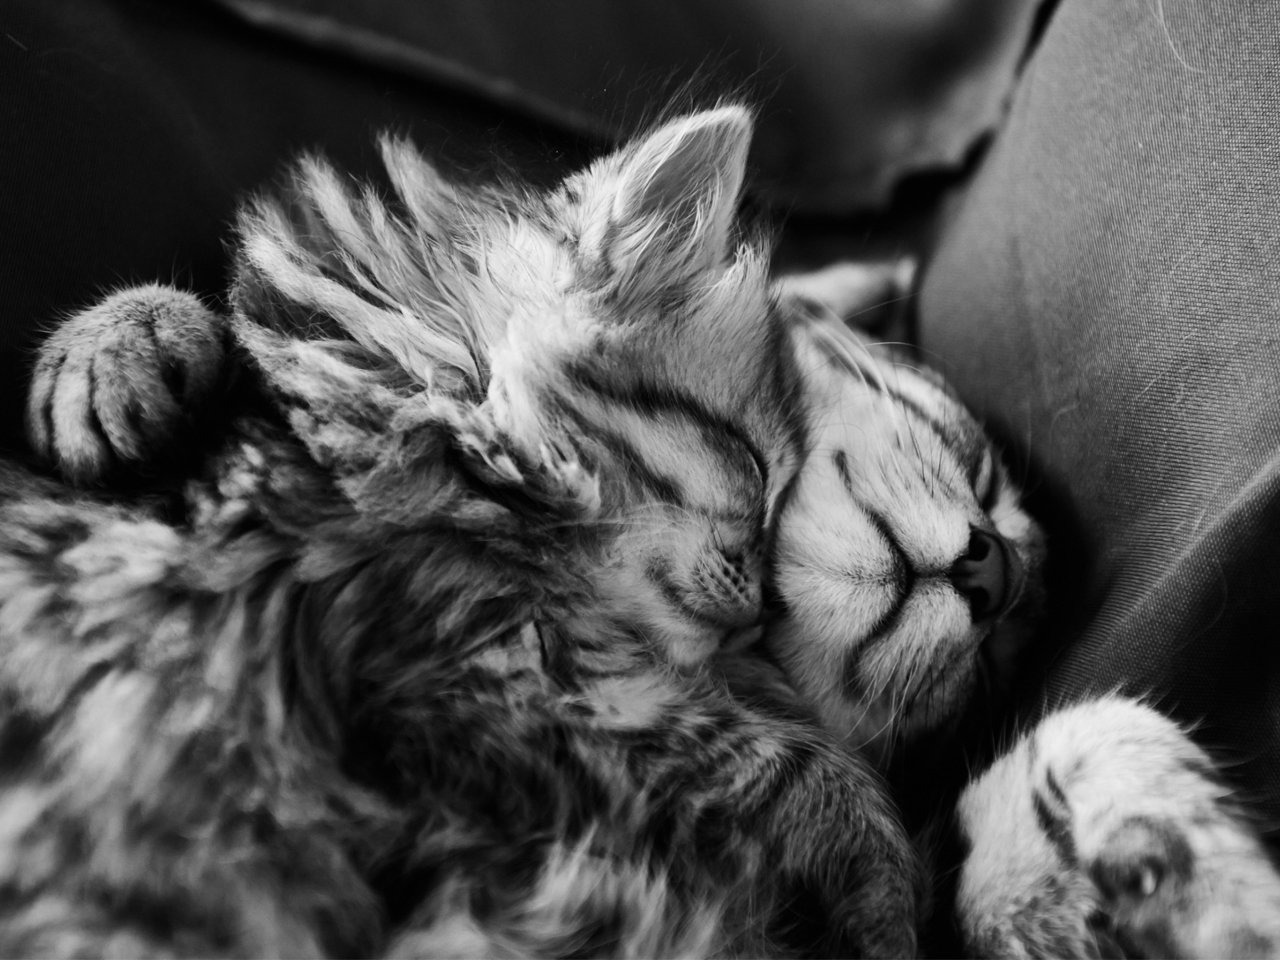 Обои Kittens Sleeping 1280x960